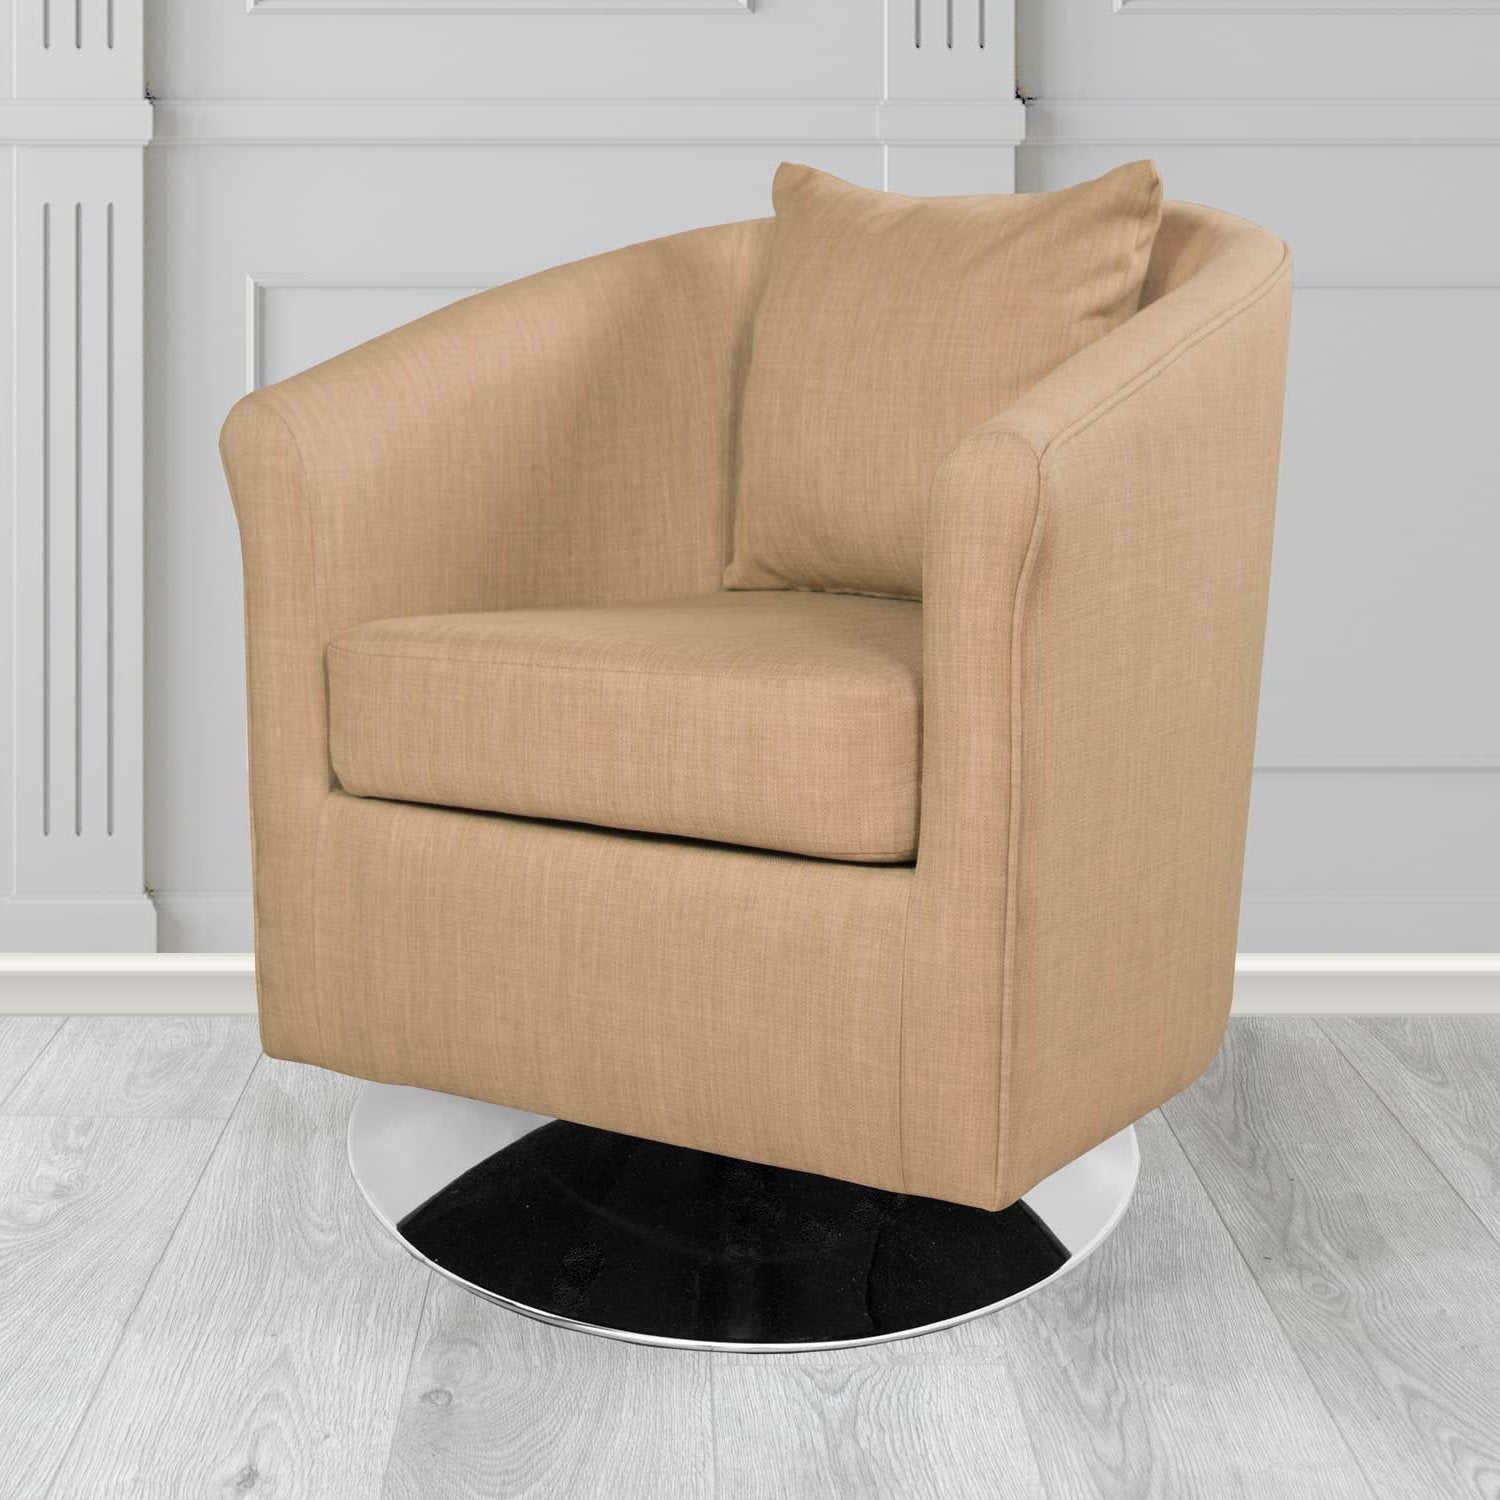 St Tropez Charles Honey Plain Linen Fabric Swivel Tub Chair - The Tub Chair Shop